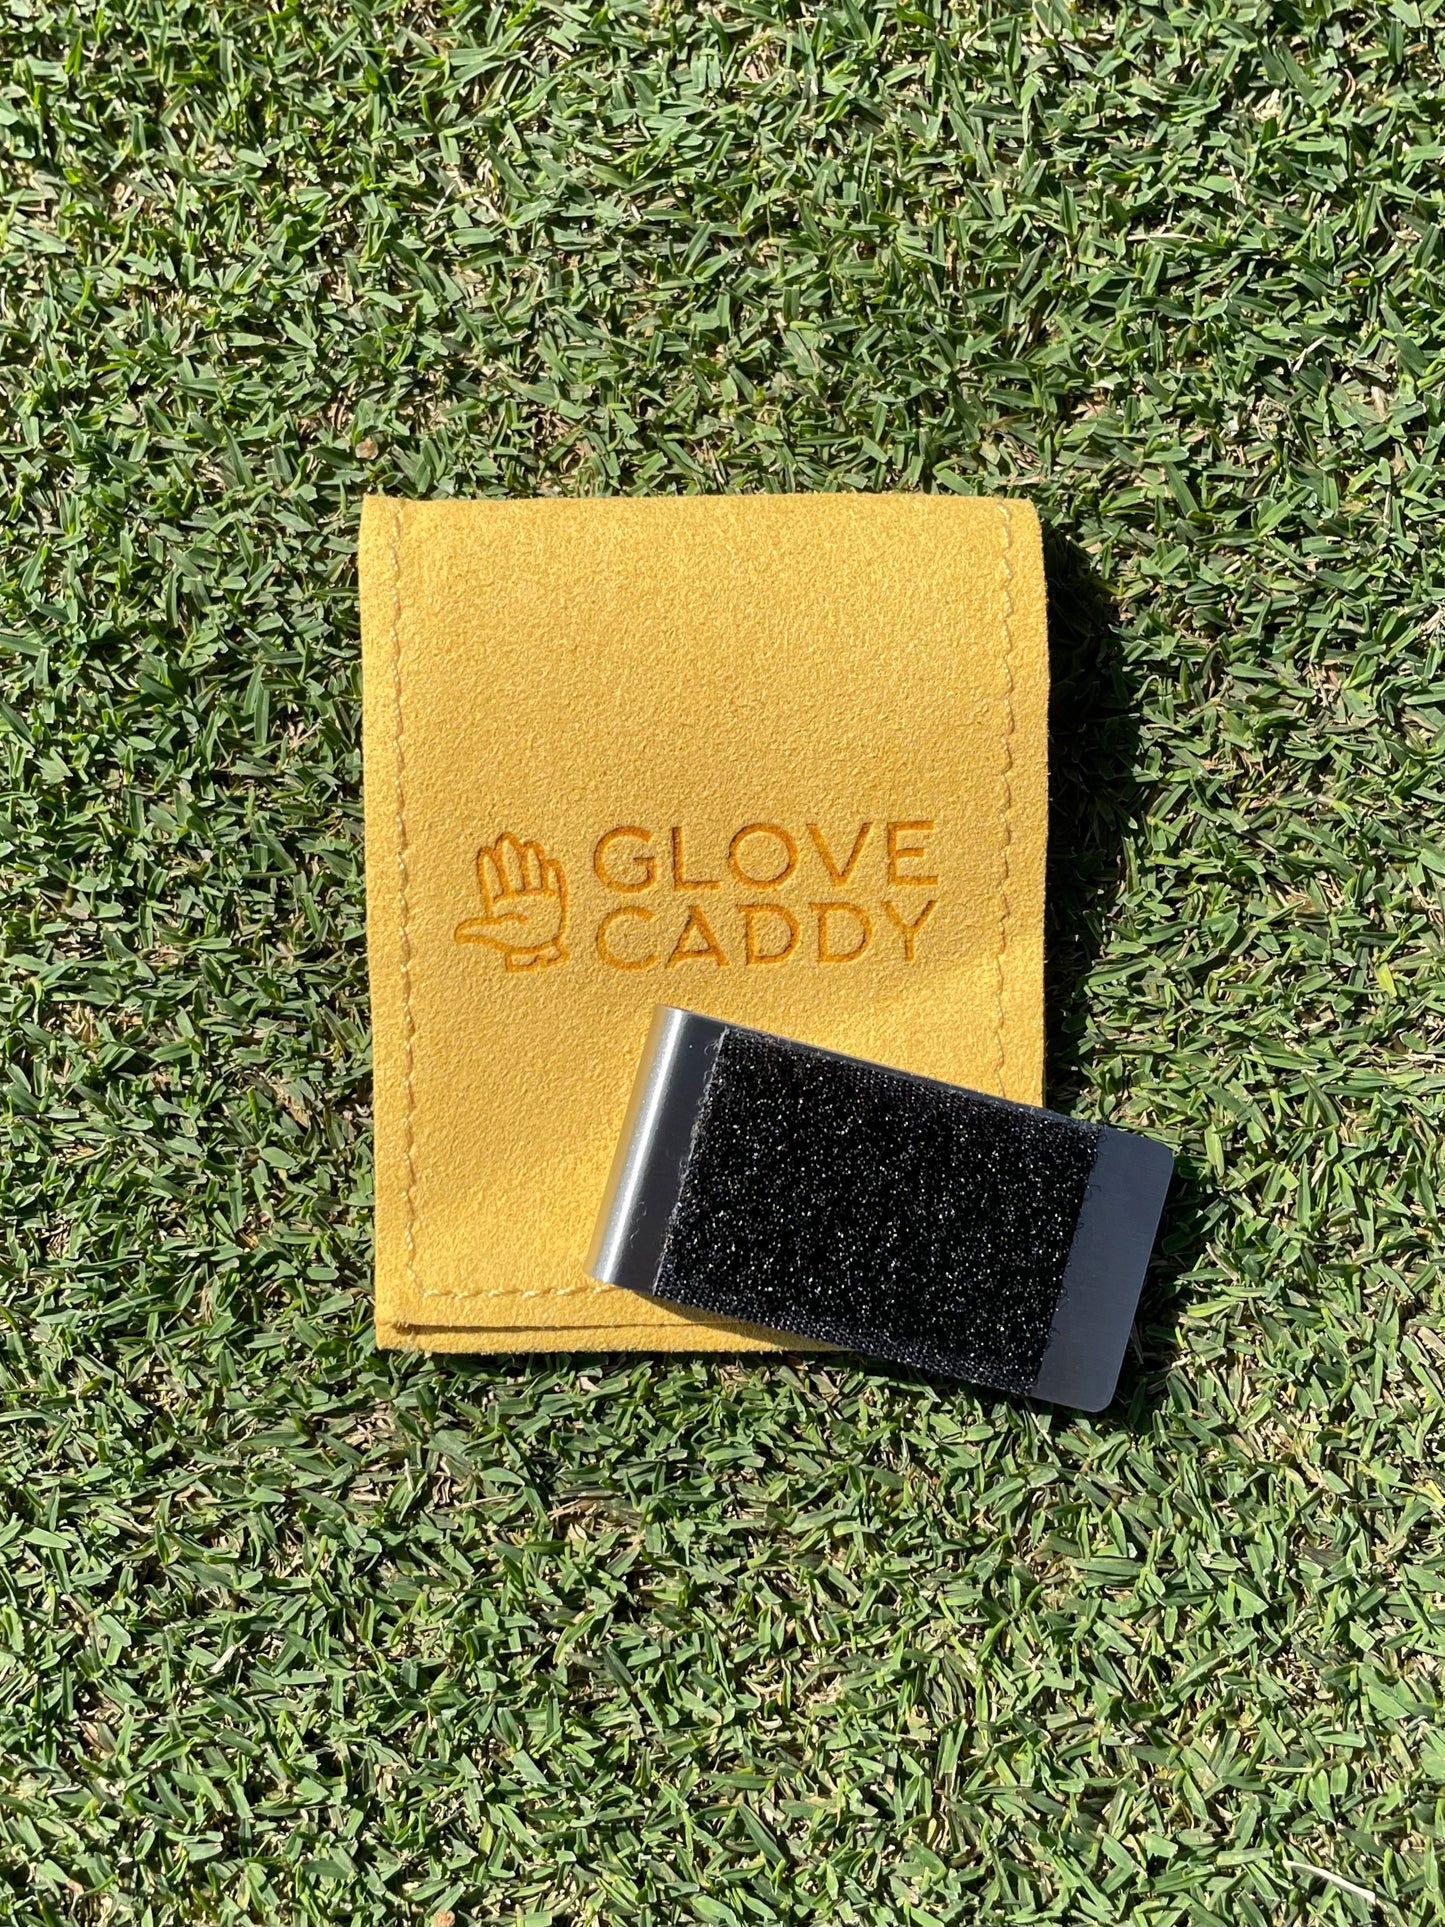 Glove Caddy Original Clip